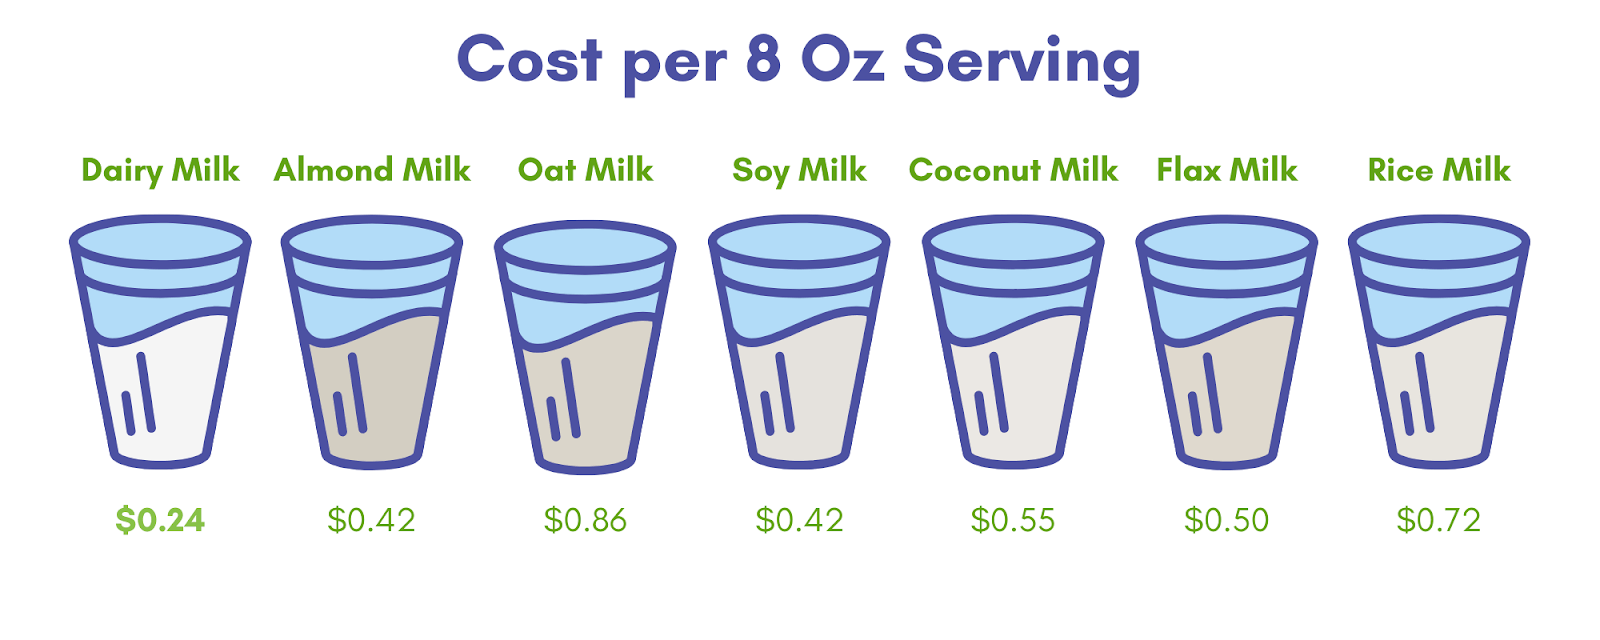 Cost per 8 oz Serving